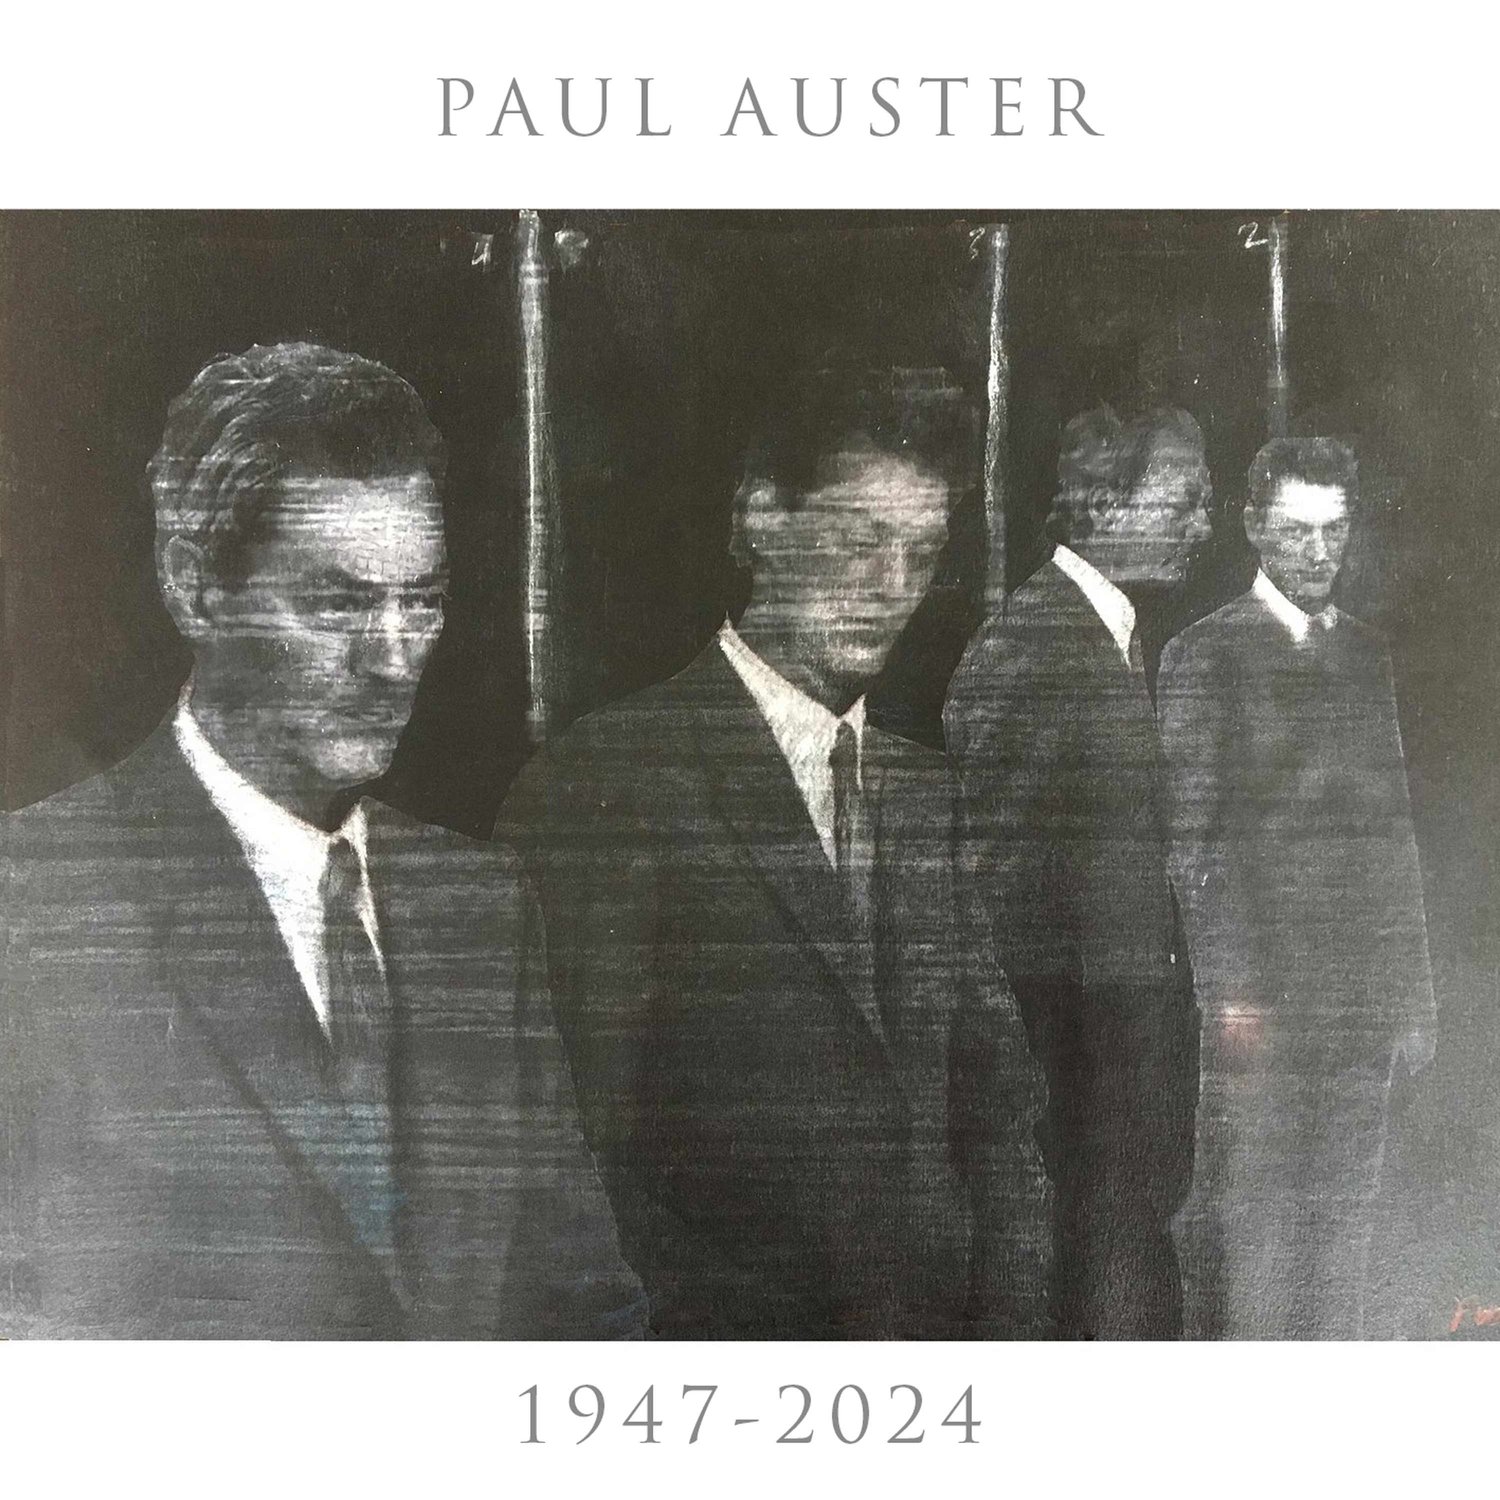 Remembering PAUL AUSTER - Writer, Director (1947-2024)